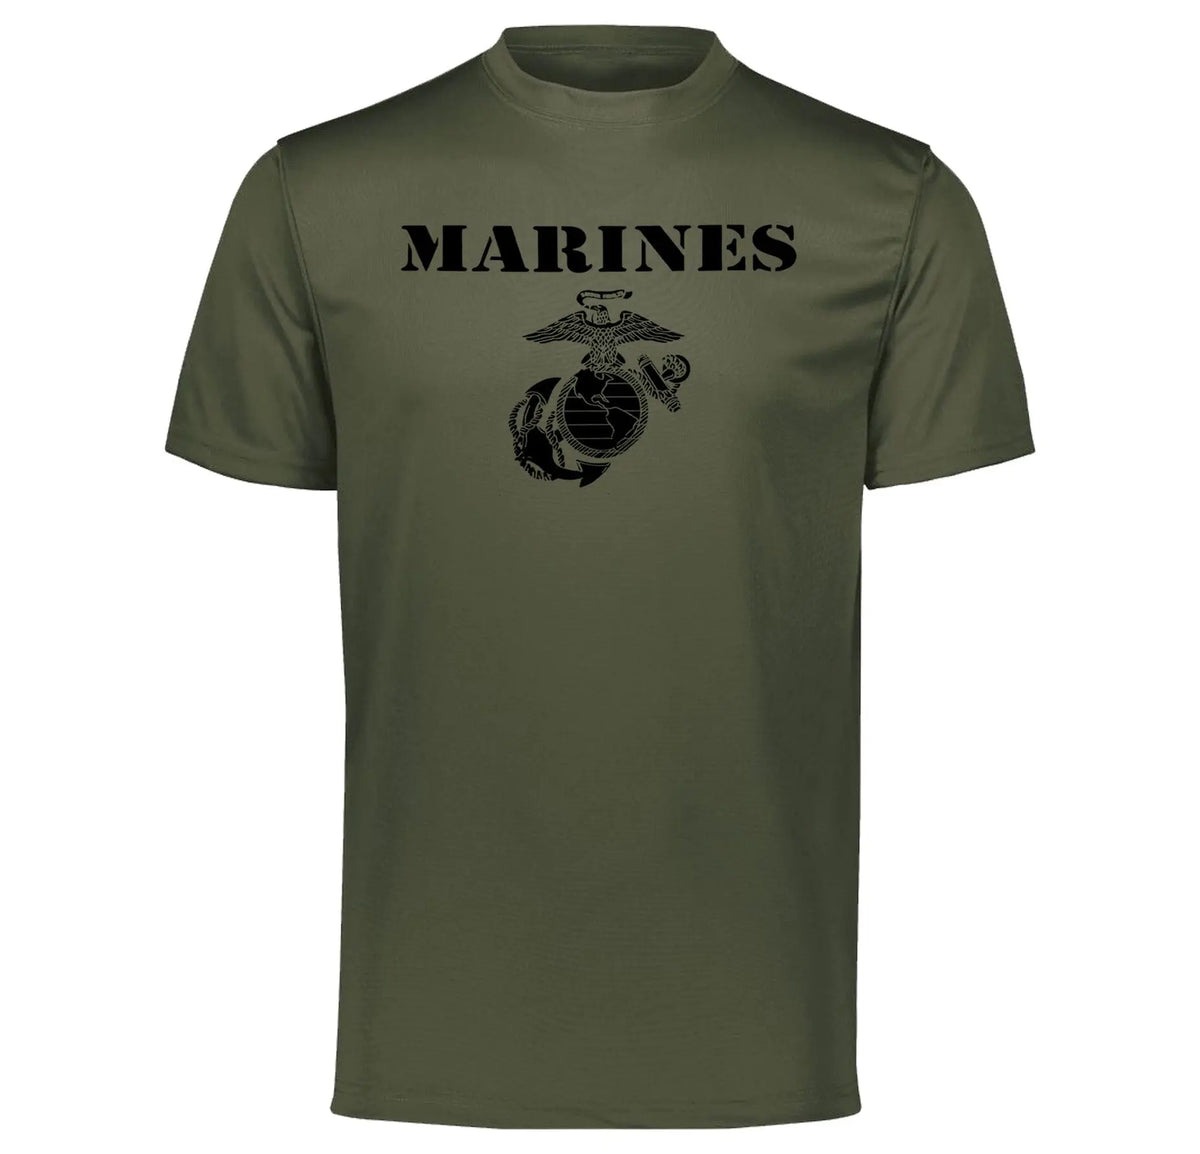 Vintage Marines Performance Tee